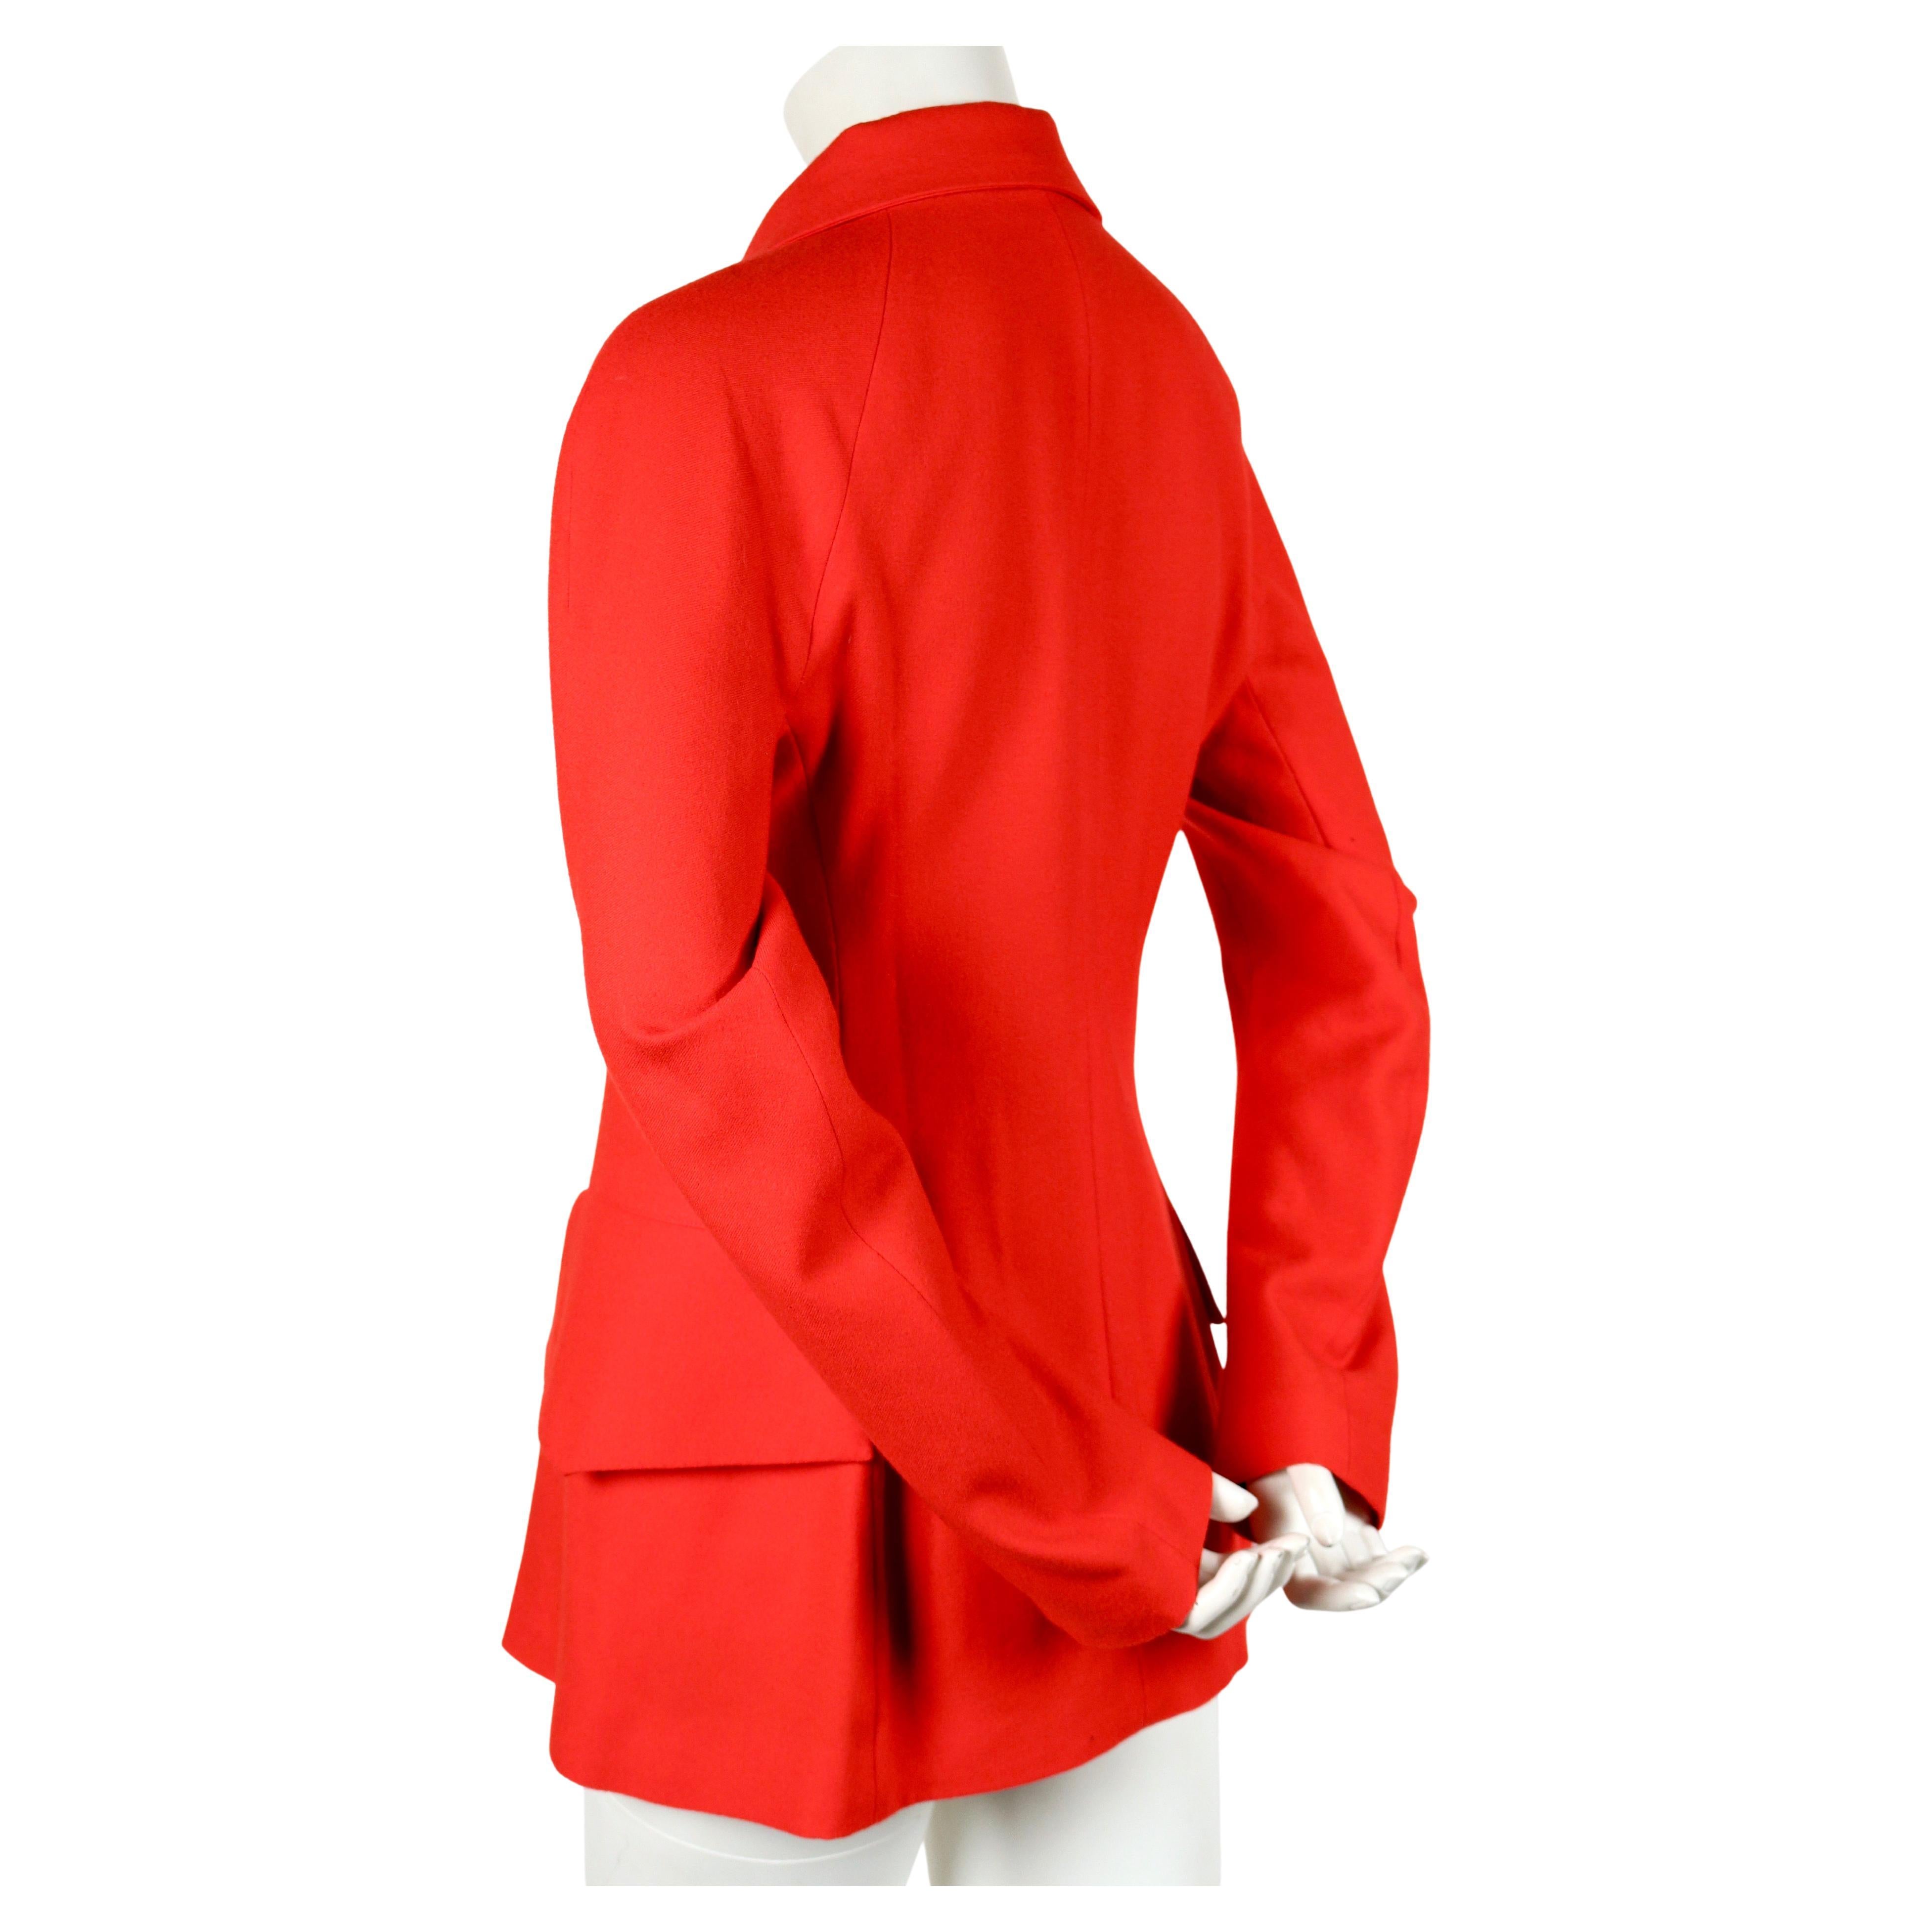 Veste en laine rouge à fermeture à boutons-pression, conçue par Yohji Yamamoto et datant de la fin des années 1990. Labellisé taille 2. Mesures approximatives : buste 34.5